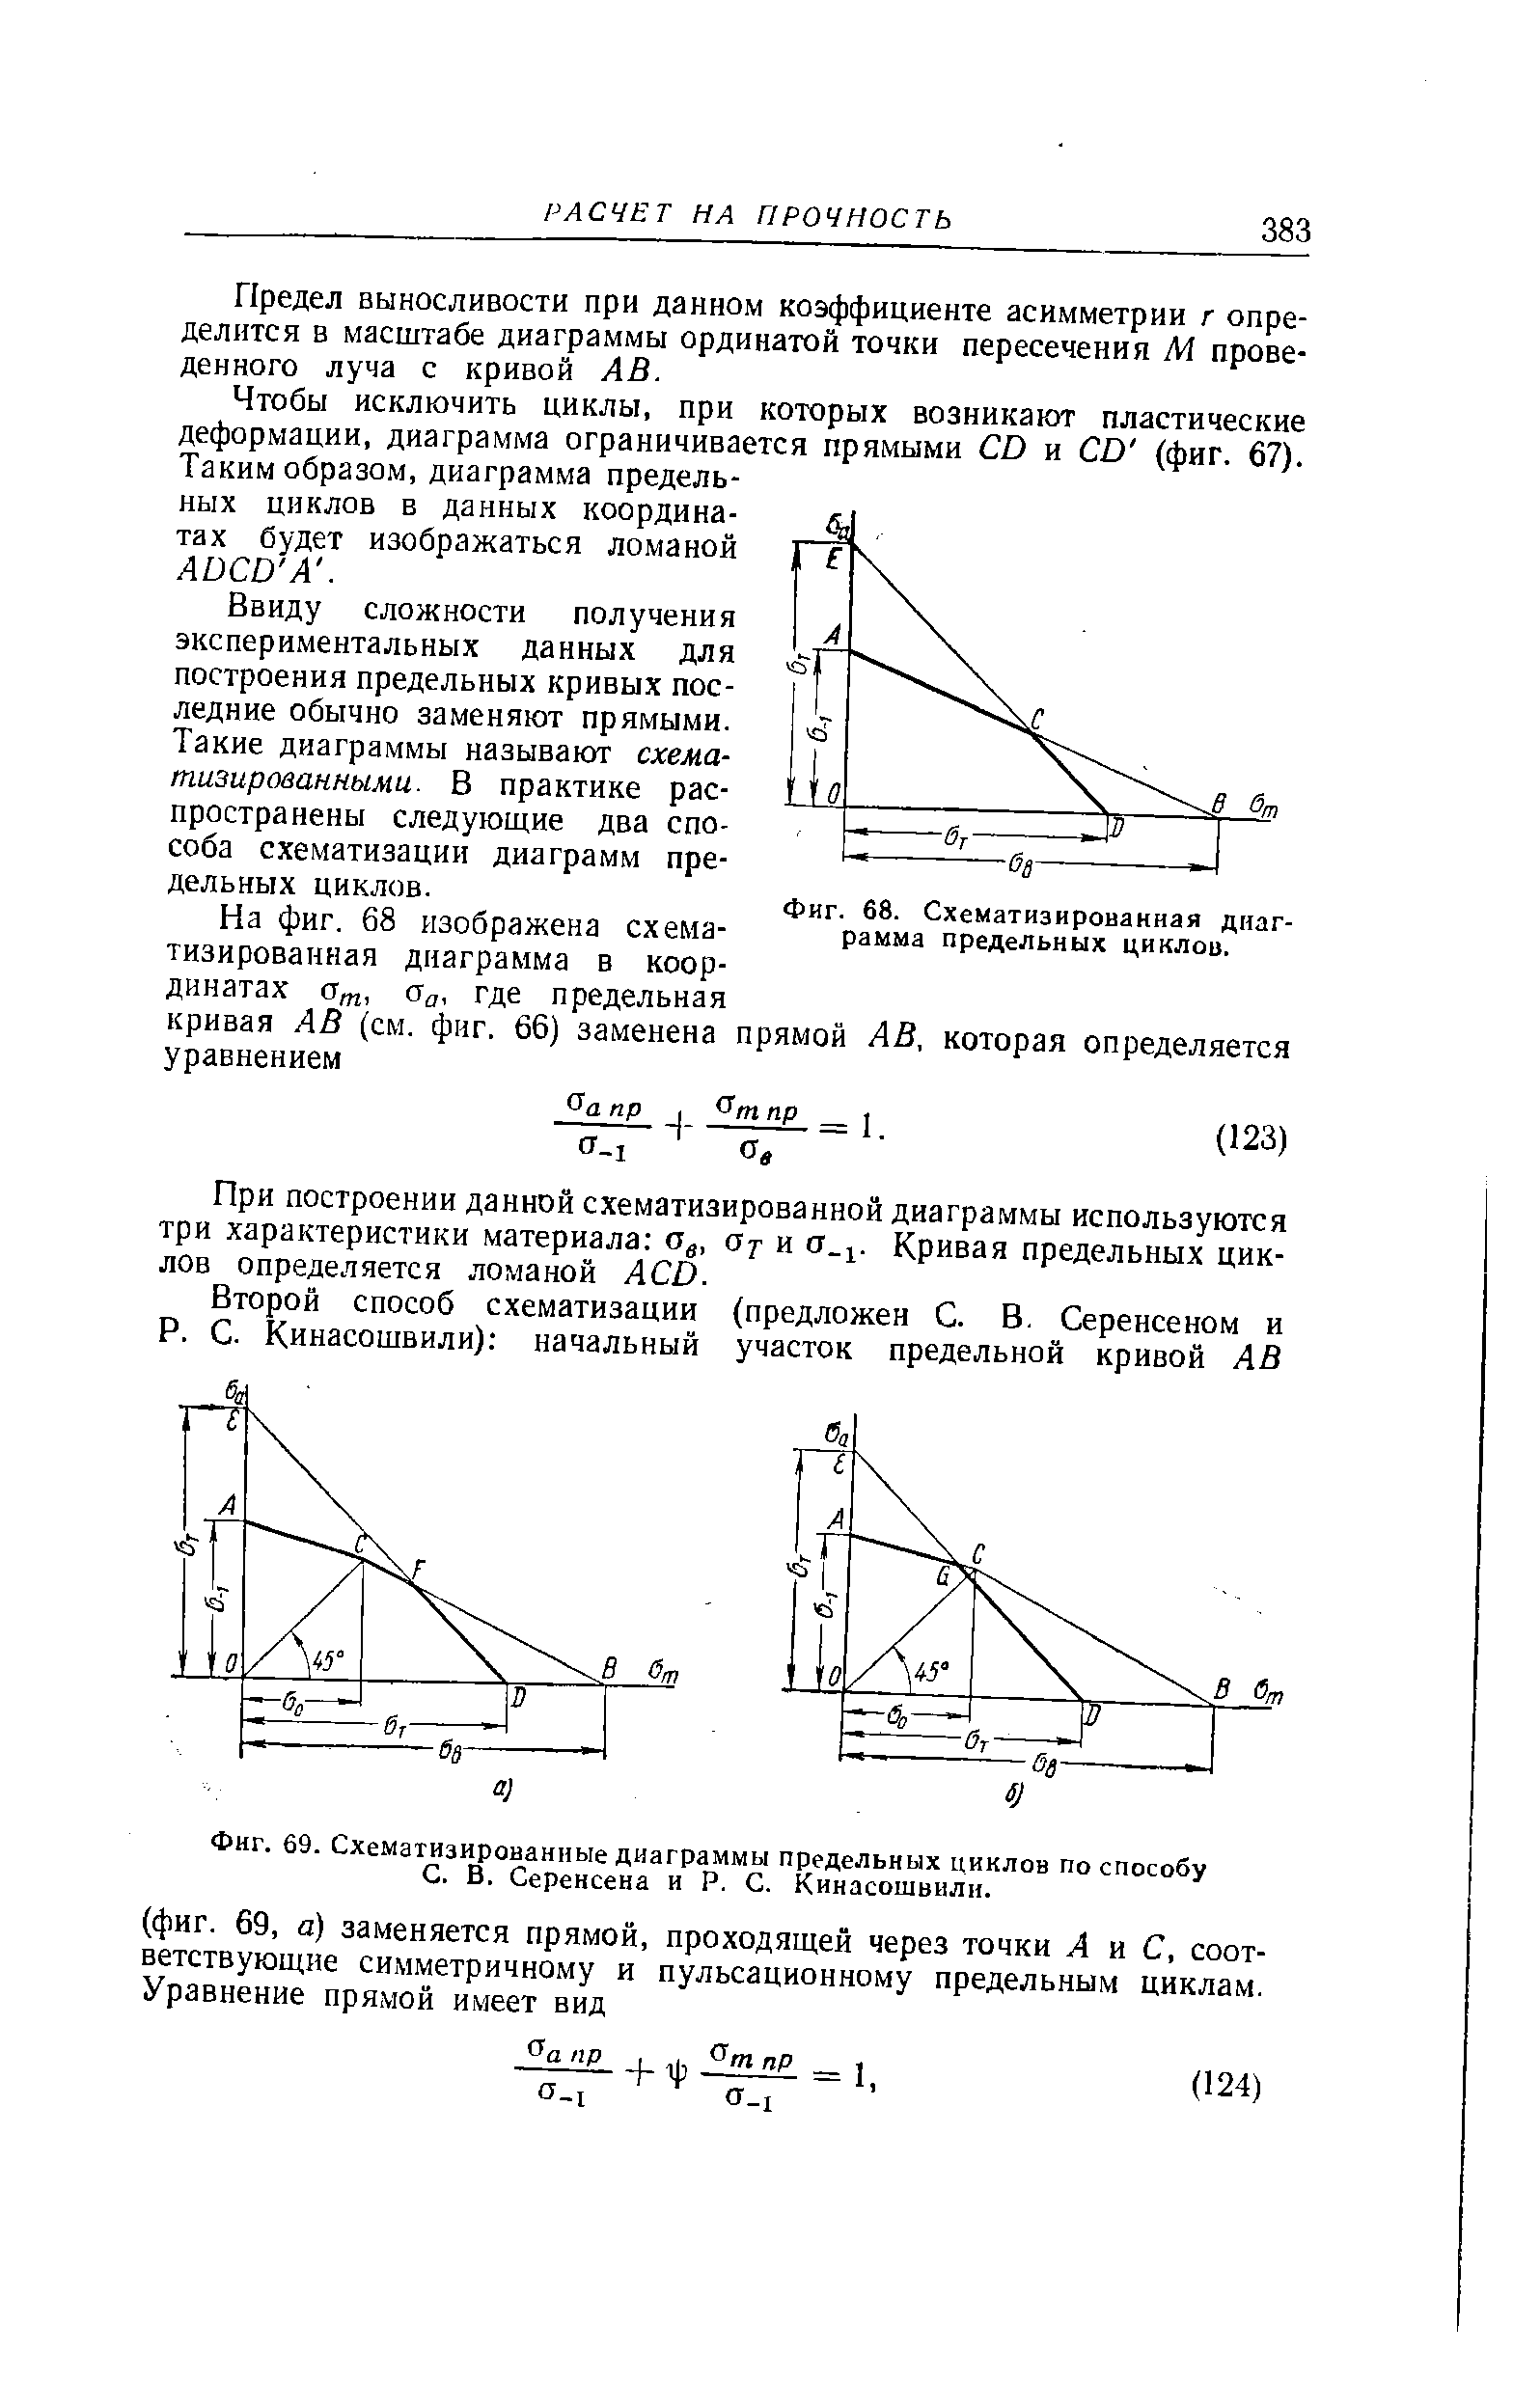 Фиг. 68. Схематизированная диаграмма предельных циклов).
